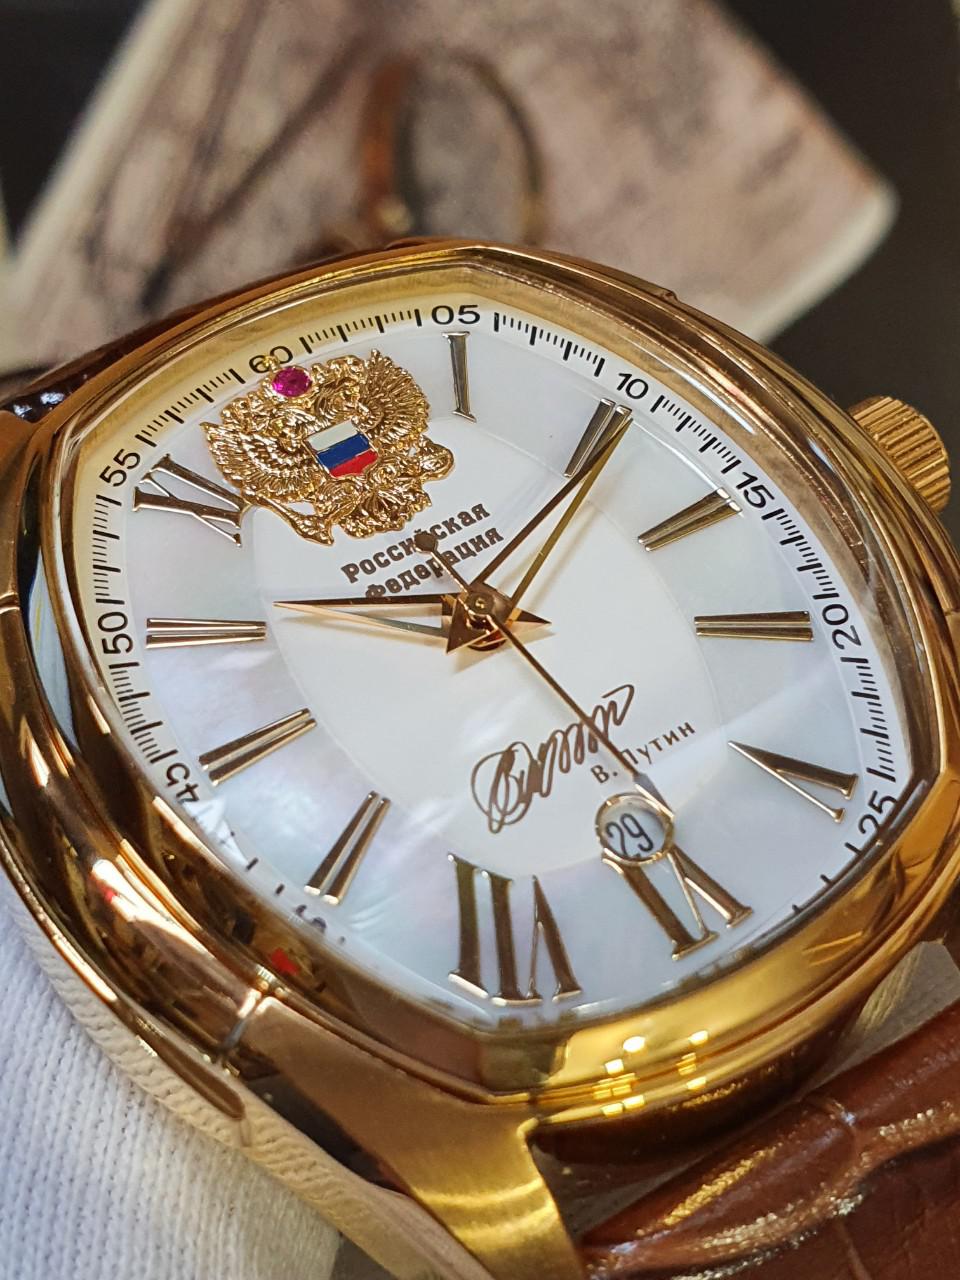 Đồng hồ Putin 252CK112 chữ ký Tổng thống phiên bản giới hạn